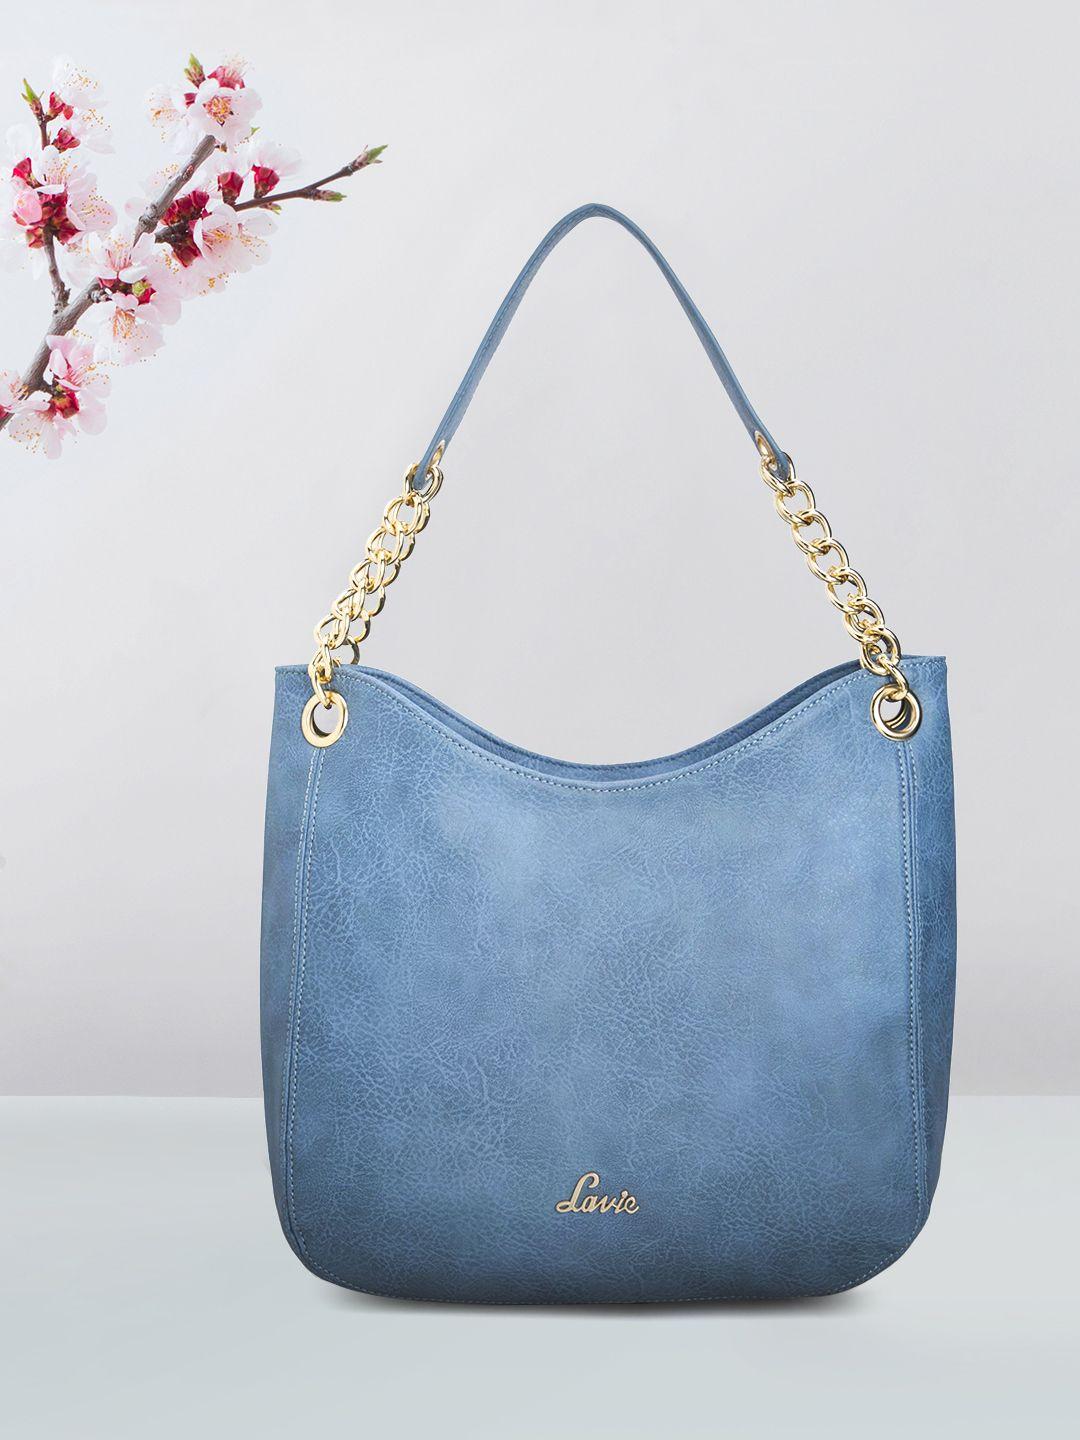 lavie antonio women blue large hobo handbag